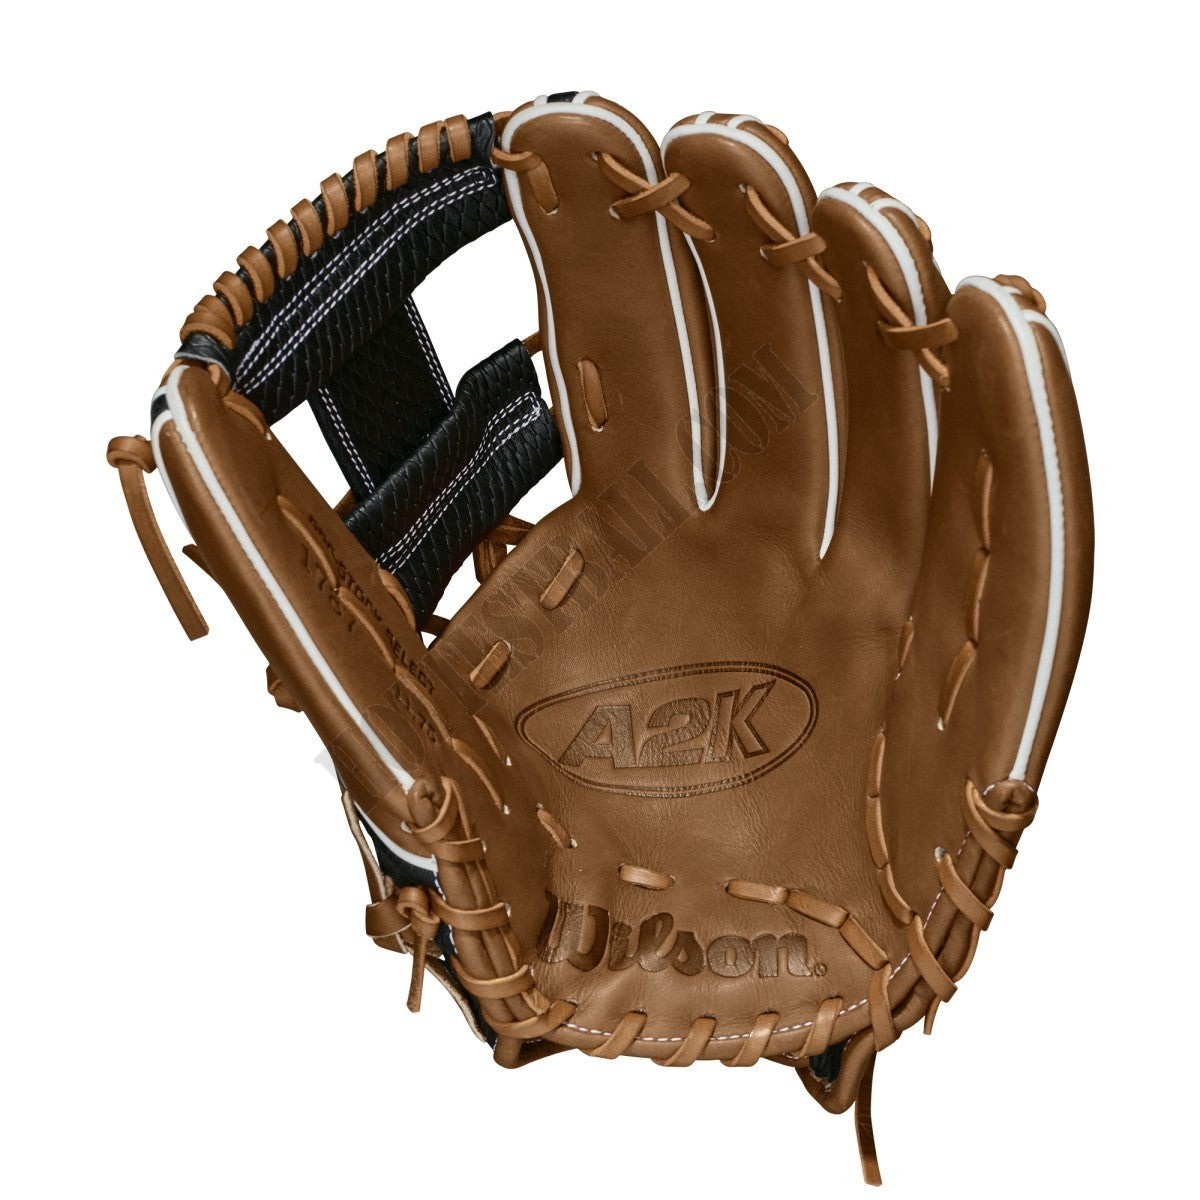 2021 A2K 1787 11.75" Infield Baseball Glove ● Wilson Promotions - -2